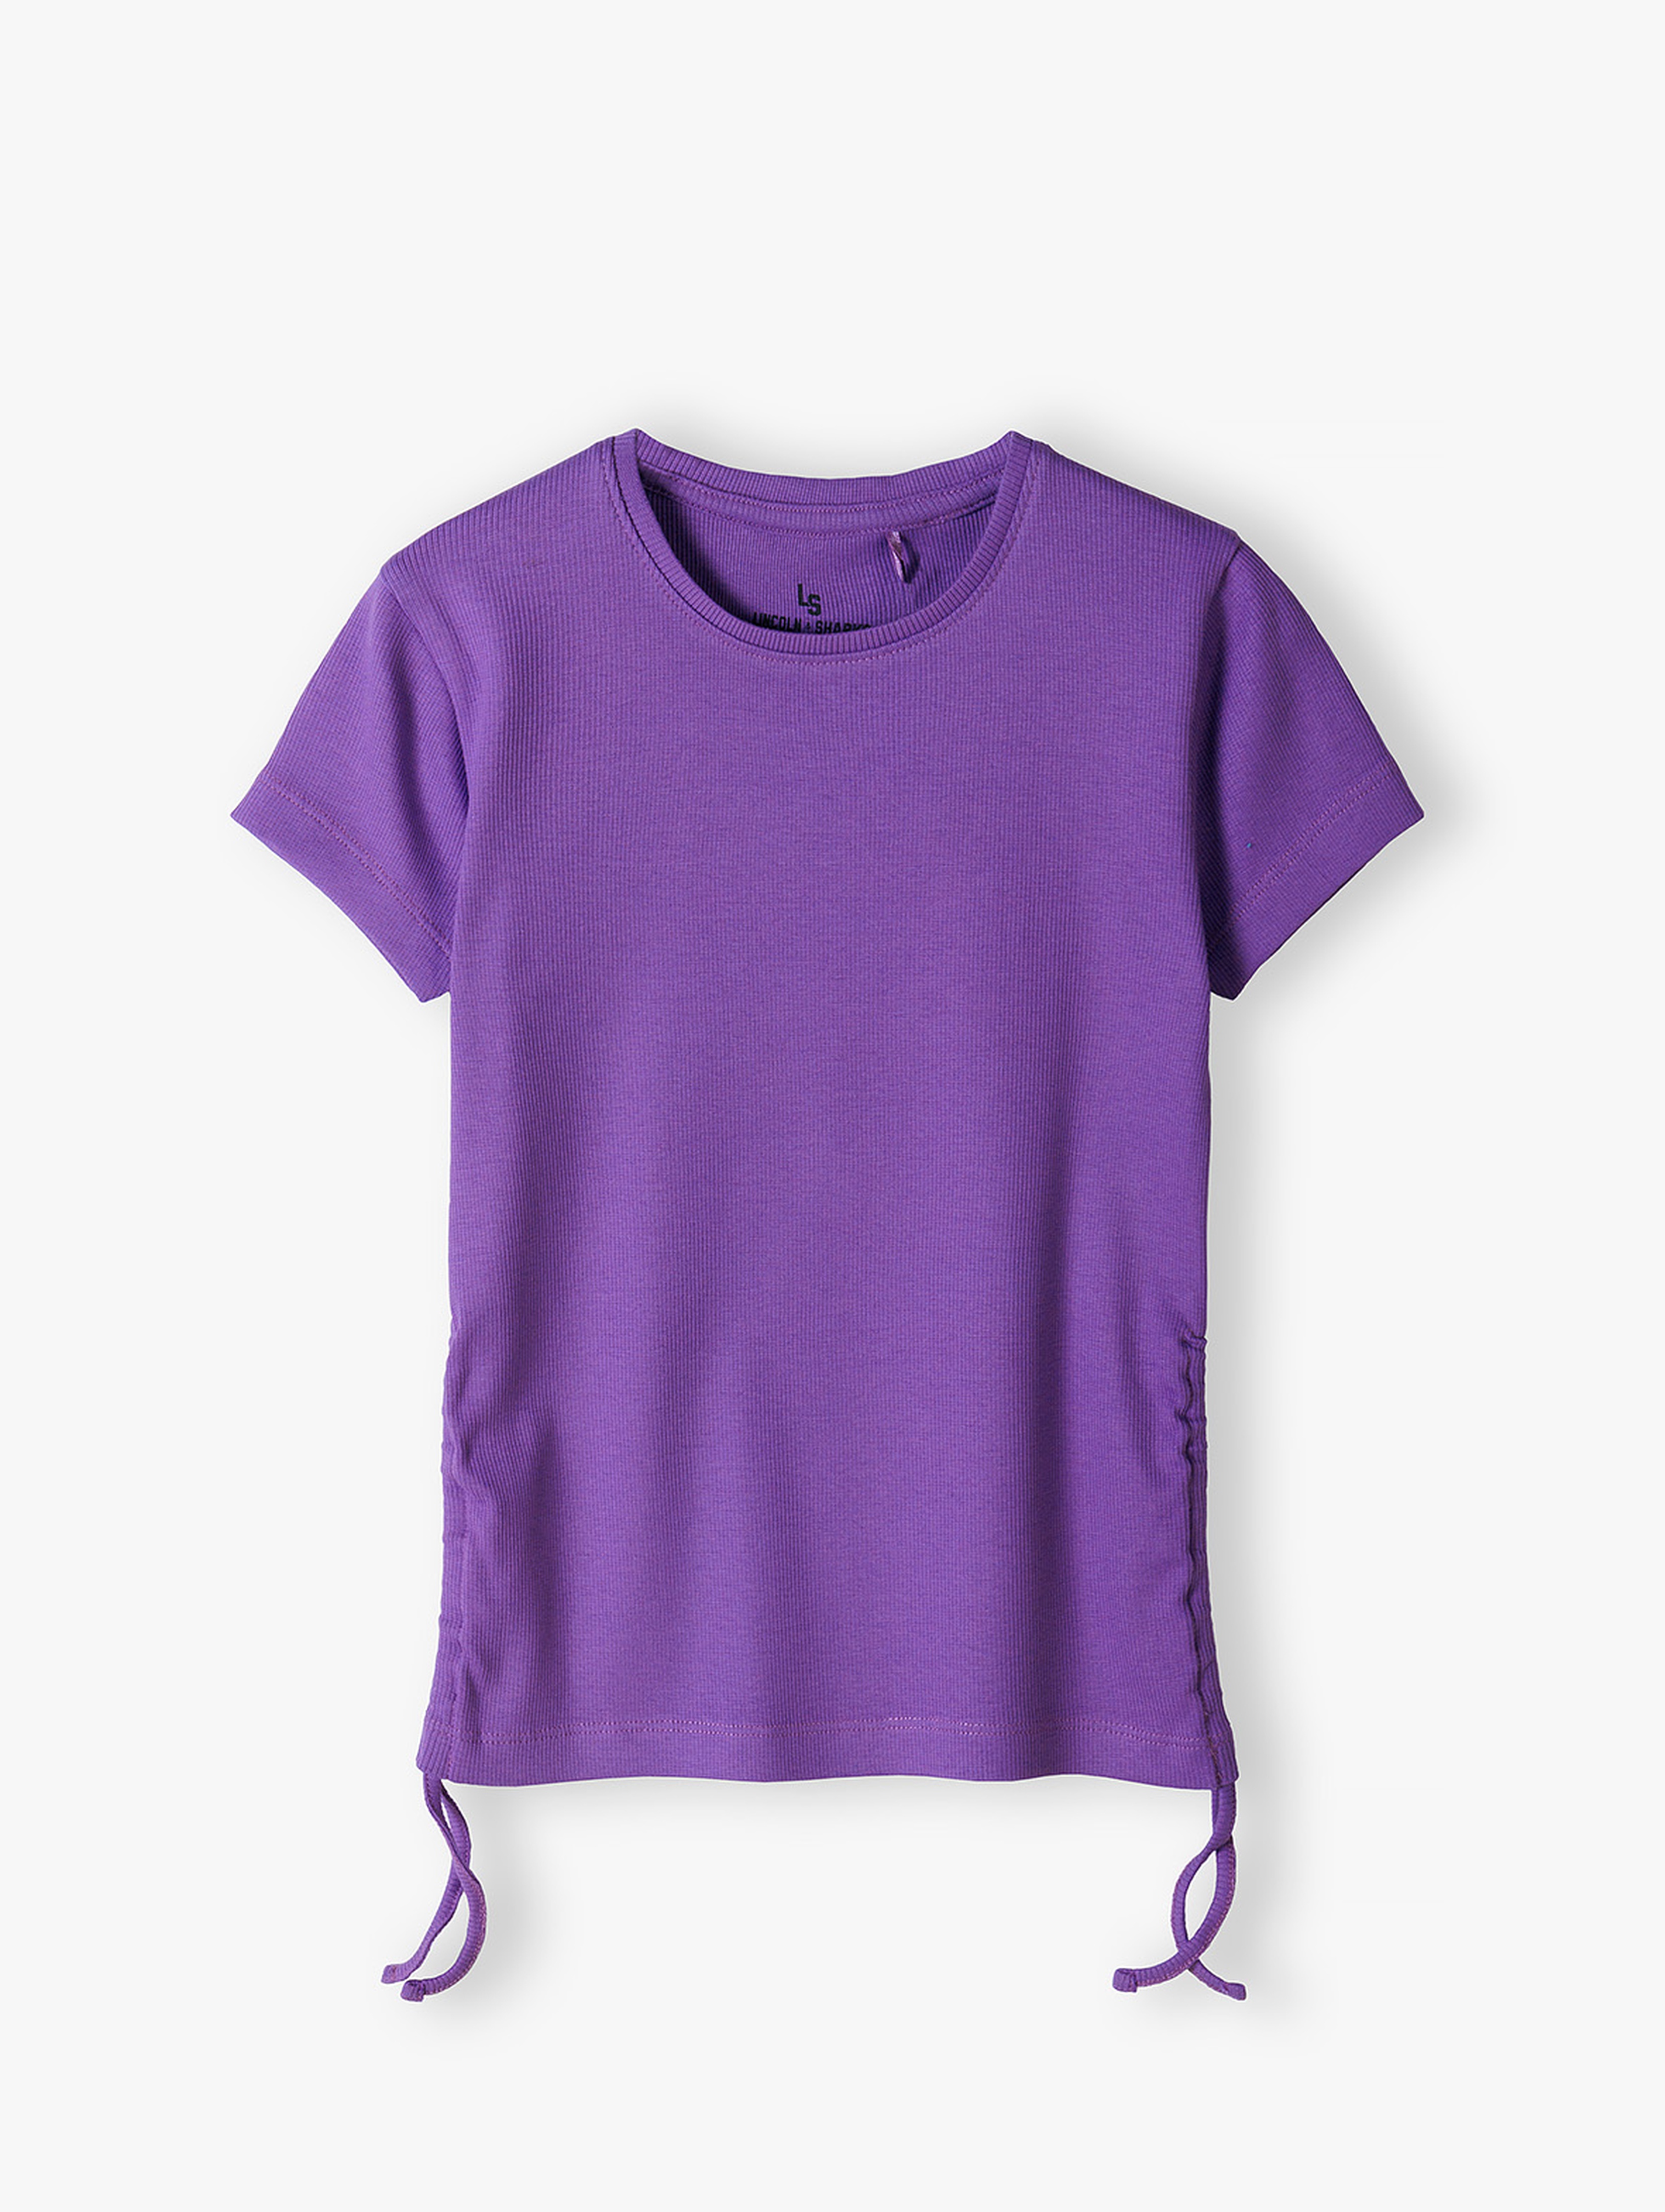 Fioletowa prążkowana koszulka dziewczęca z regulacją po bokach